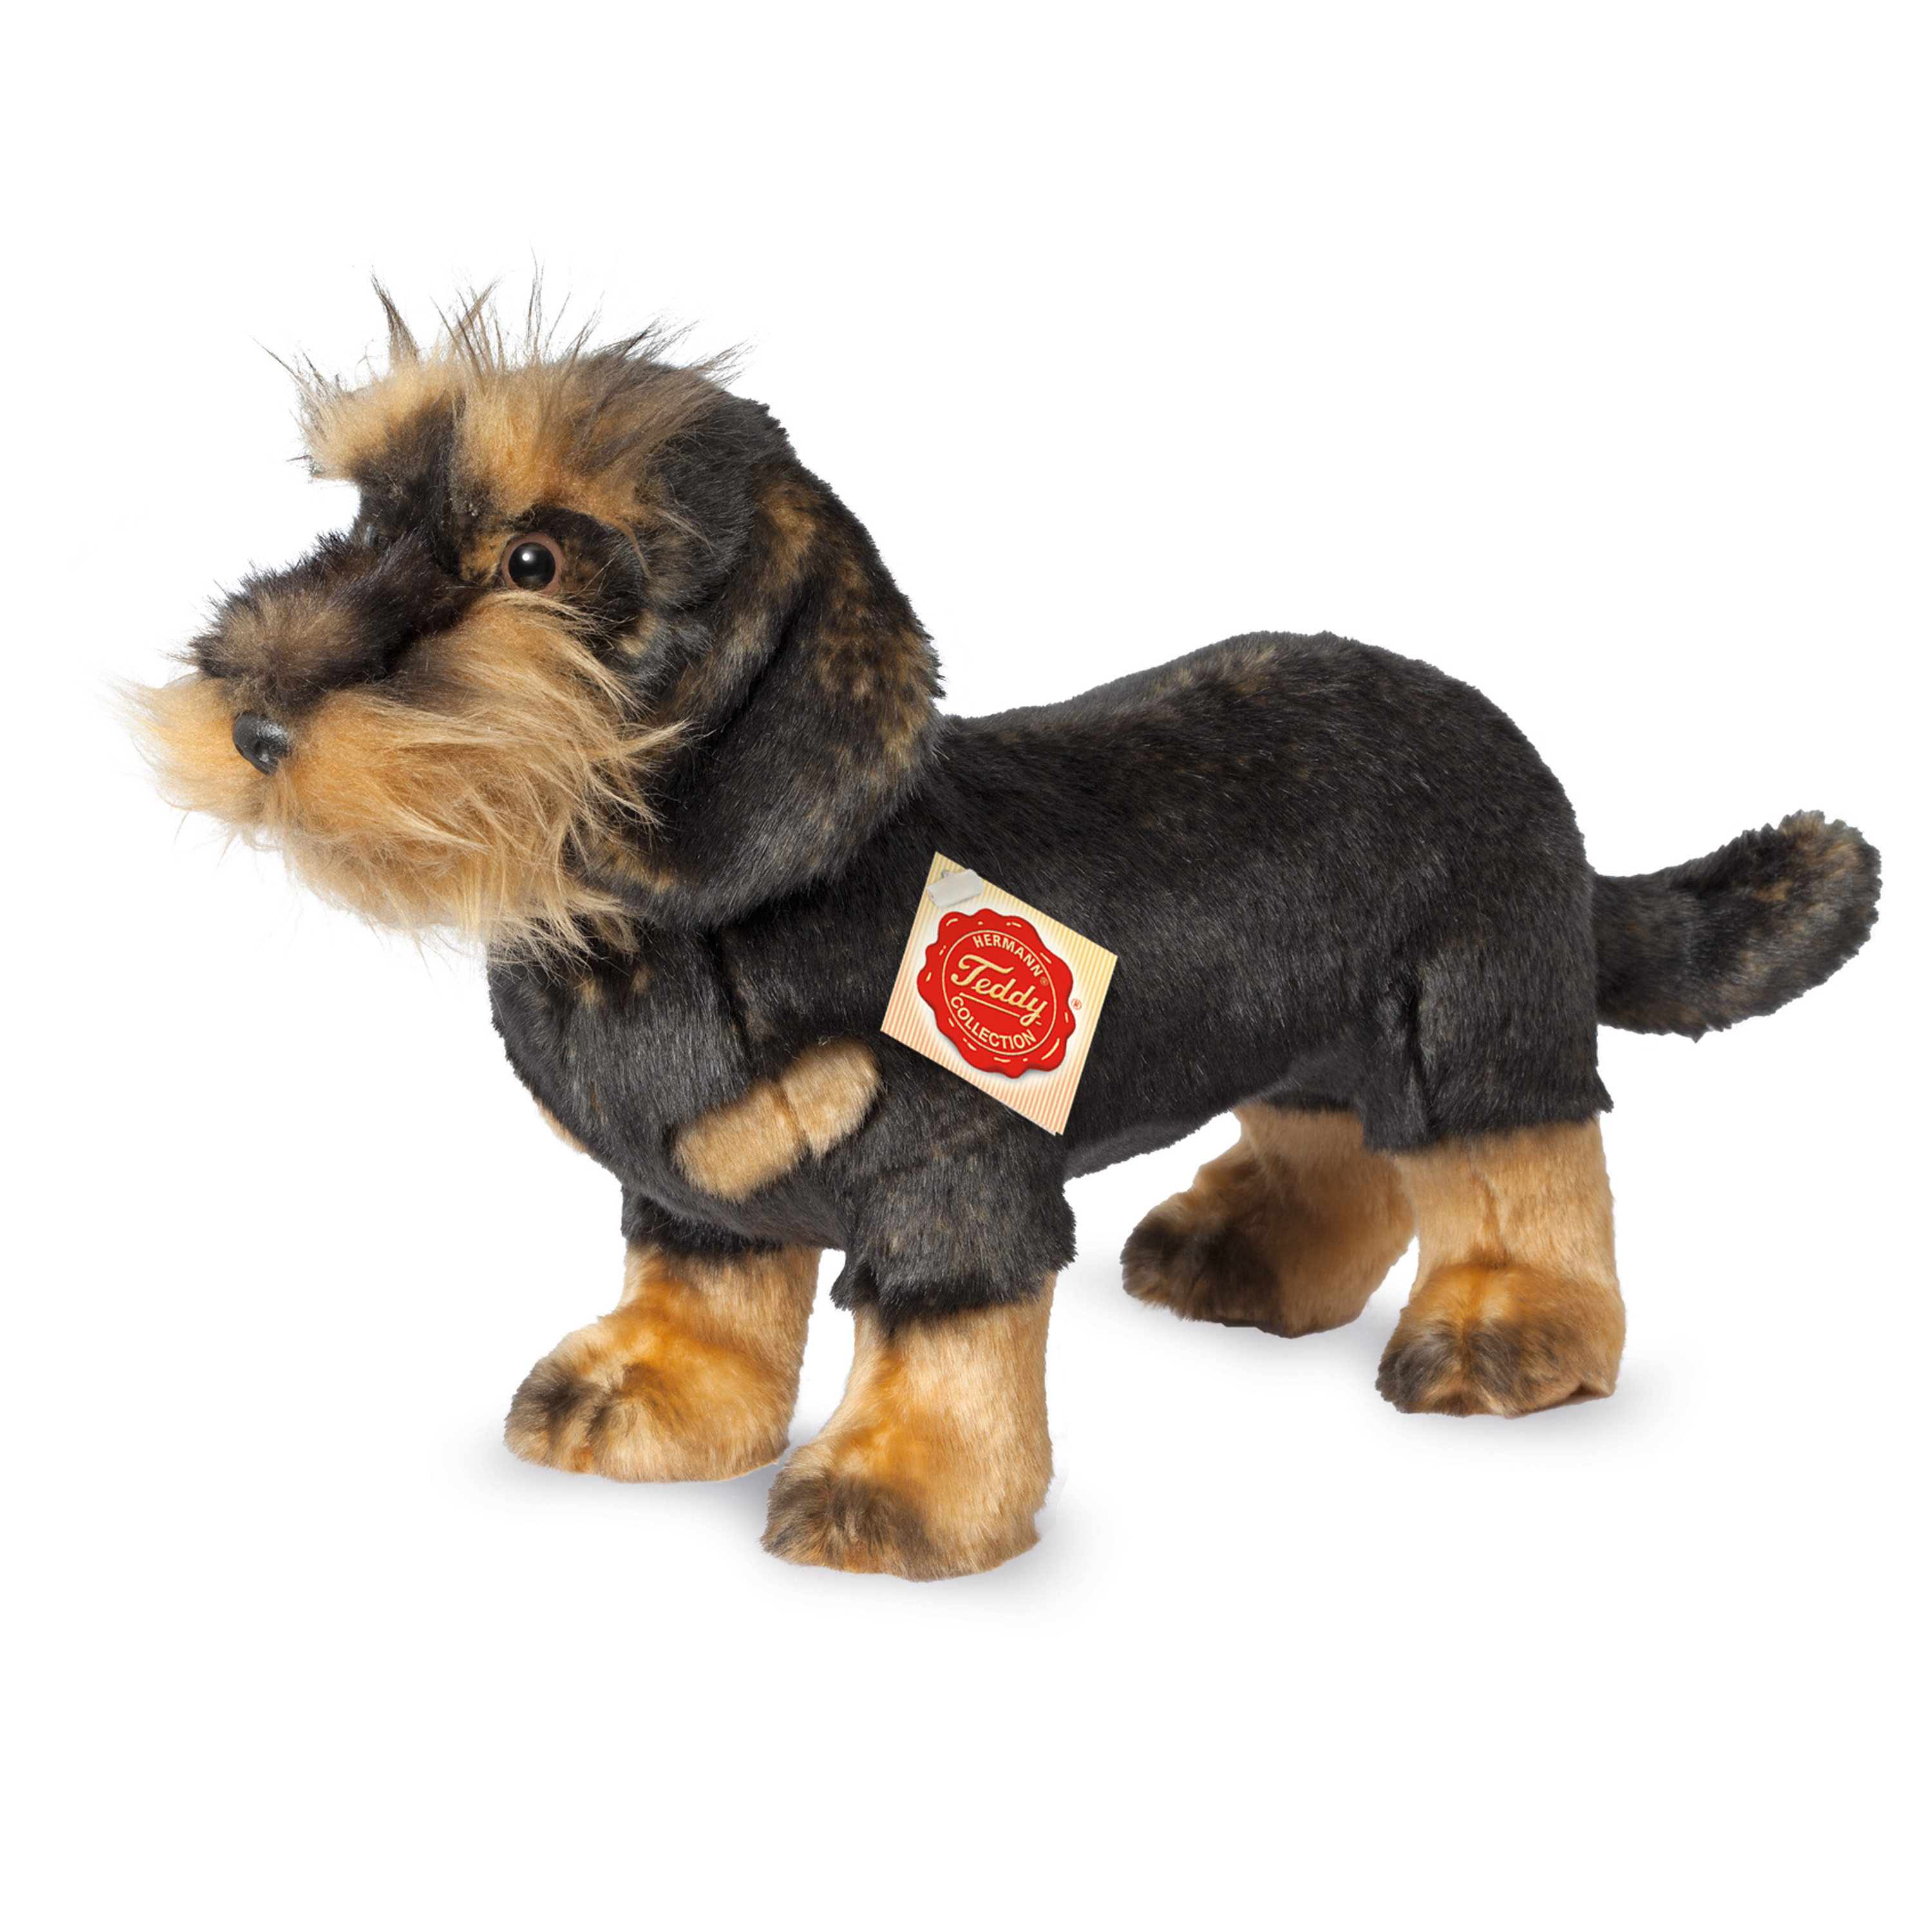 Knuffeldier hond Teckel zachte pluche stof premium kwaliteit knuffels zwart-bruin 28 cm